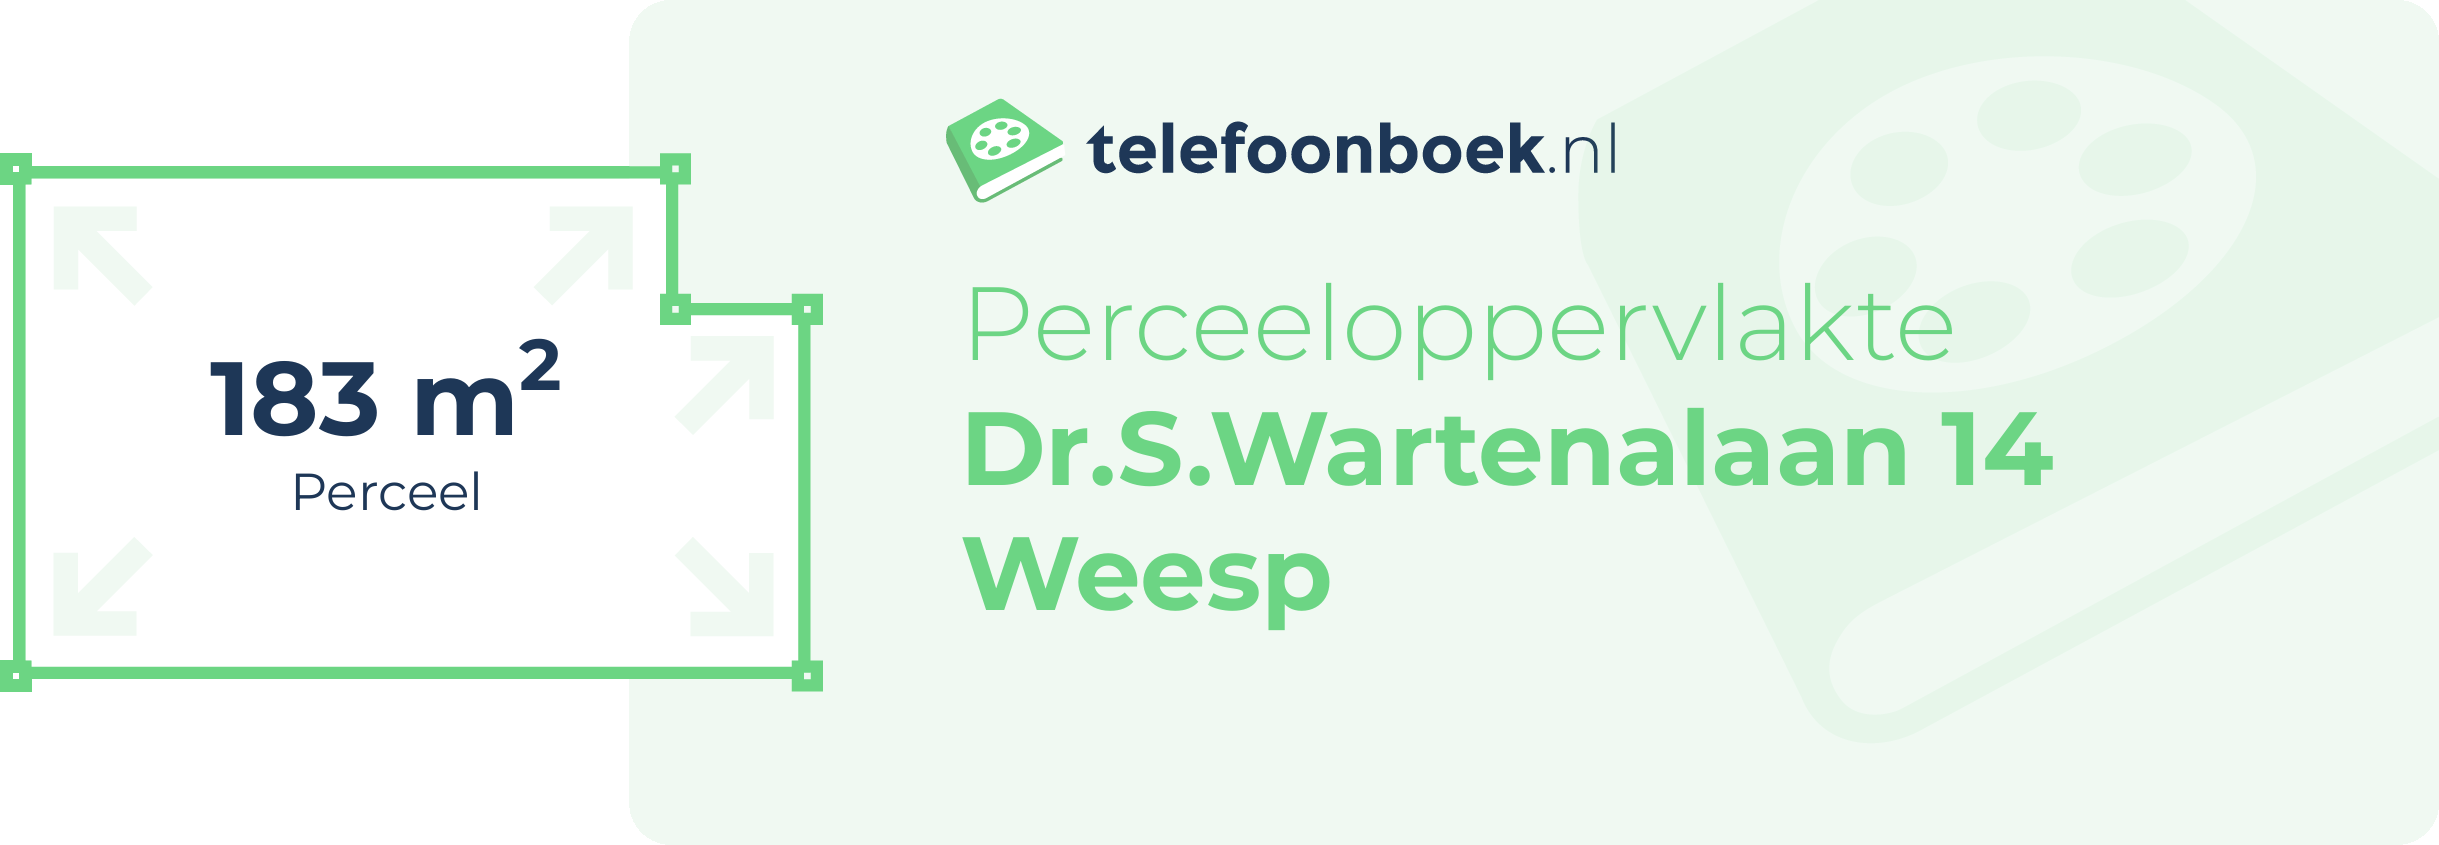 Perceeloppervlakte Dr.S.Wartenalaan 14 Weesp